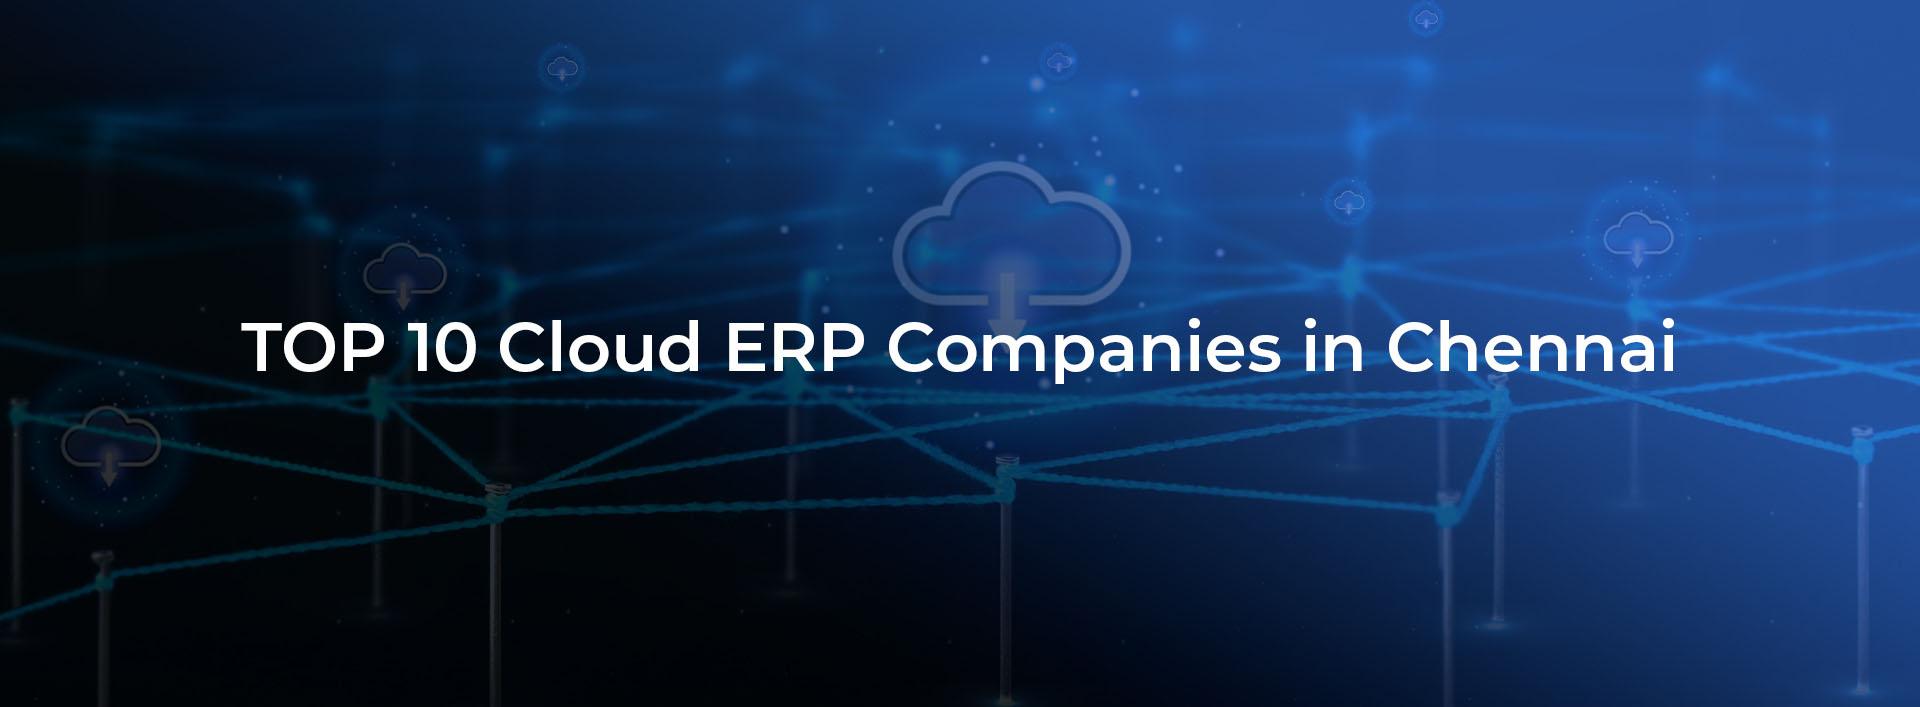 Top 10 Cloud ERP Companies in Chennai